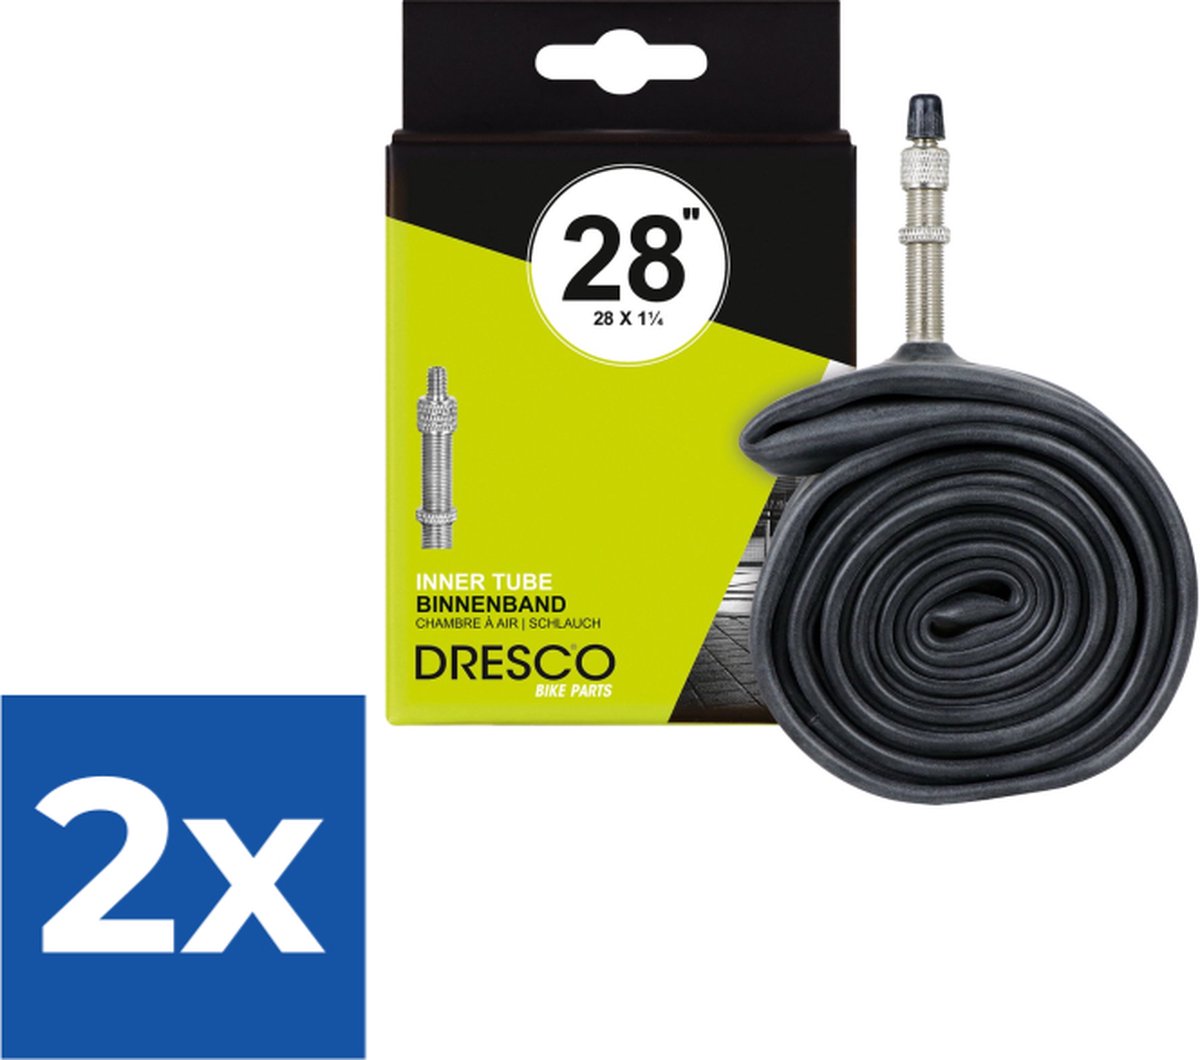 Dresco Bandenset 28 X 1 5/8 X 1 1/4- 32-622 Aps Rubber Zwart - Voordeelverpakking 2 stuks